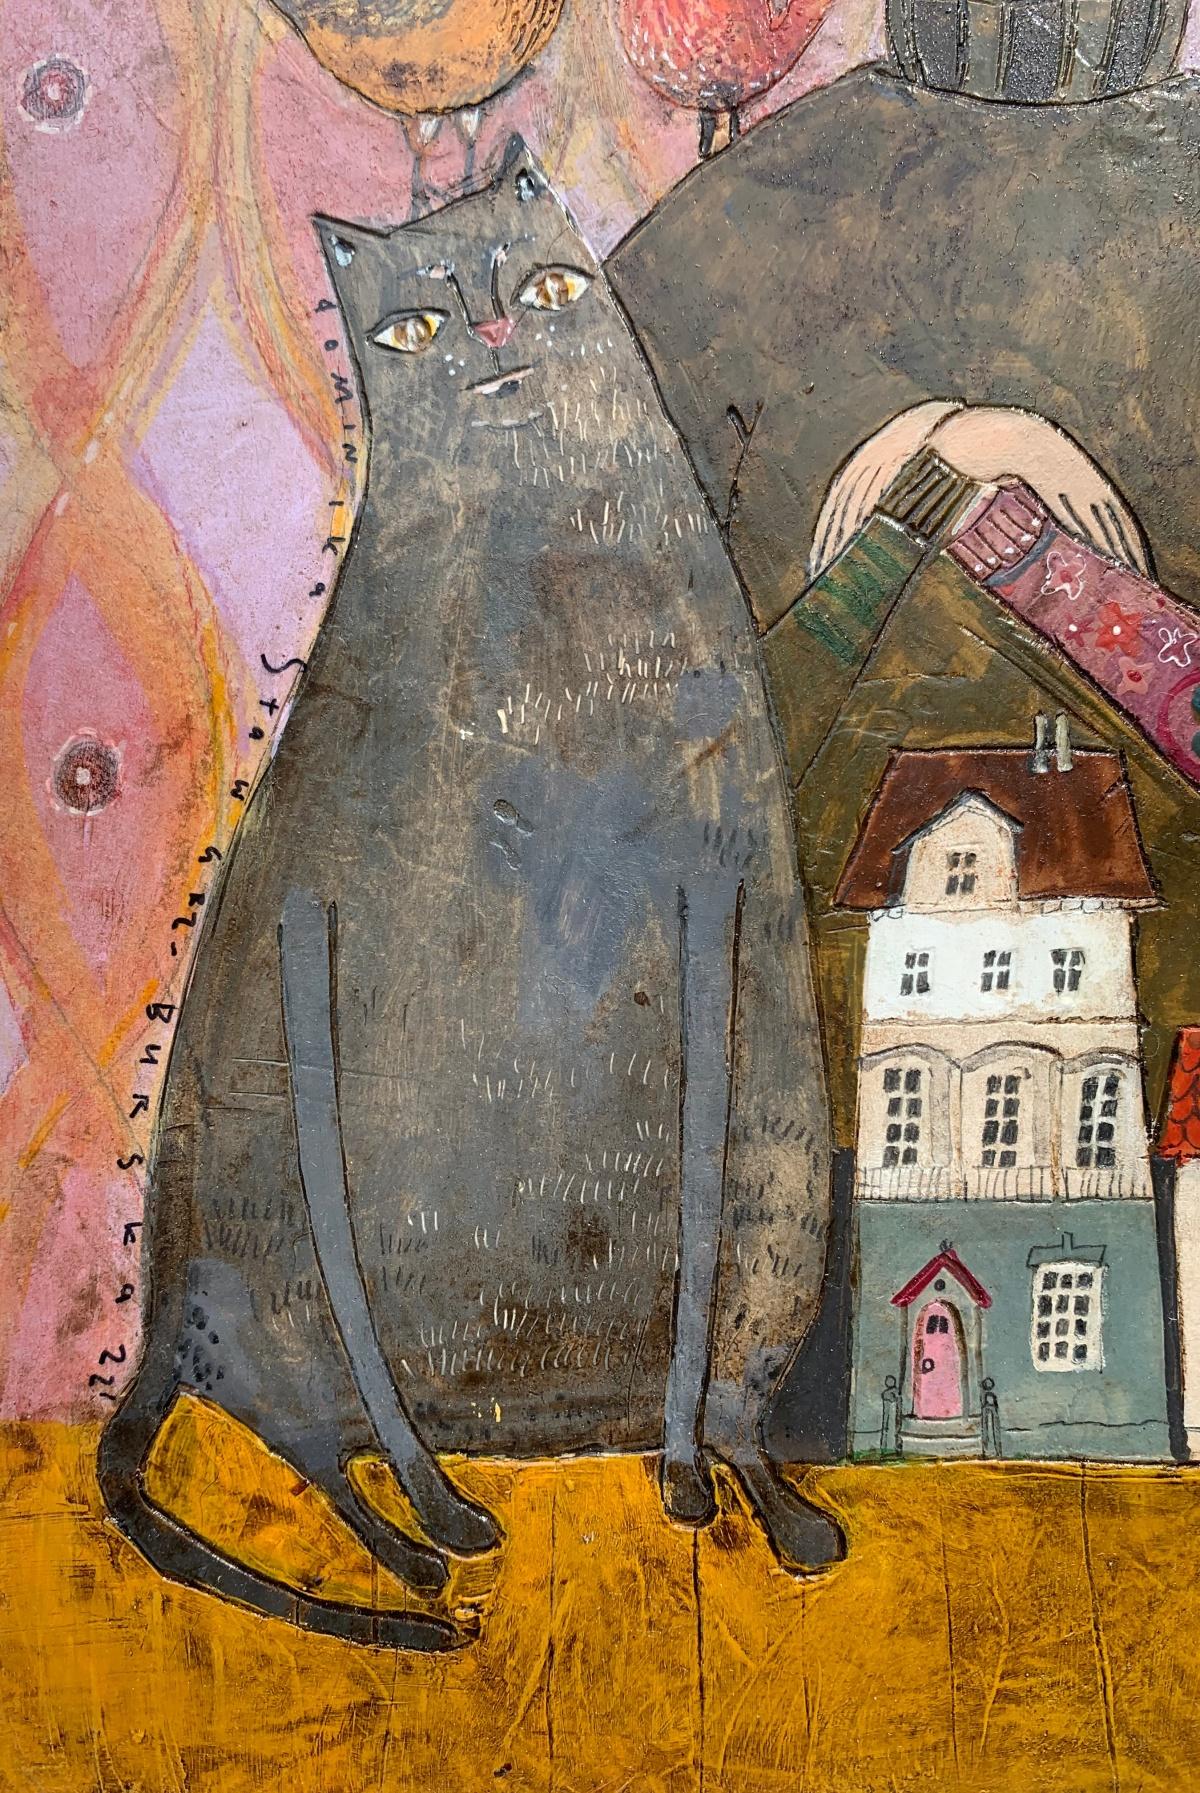 Peinture figurative contemporaine en techniques mixtes sur carton de l'artiste polonaise Dominika Stawarz-Burska. L'œuvre d'art a une finition brillante caractéristique qui ressemble à la surface d'un carreau de céramique. La composition représente